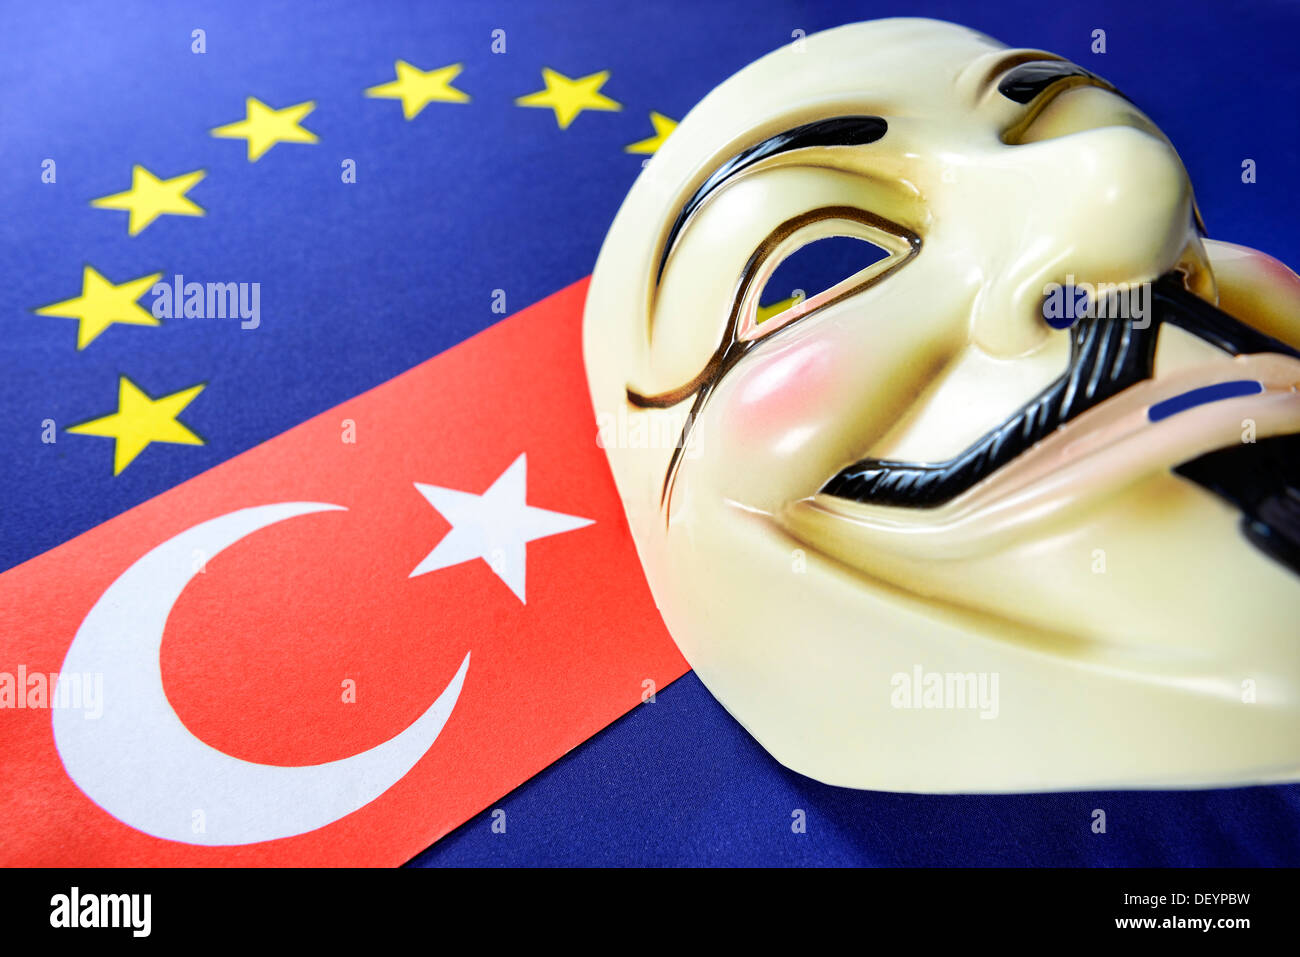 Turquía bandera, la bandera de la UE y ocupar la máscara, protestas civiles en Turquía, Türkei-Fahne, UE-Fahne und Occupy-Maske, Bürgerproteste in der T Foto de stock